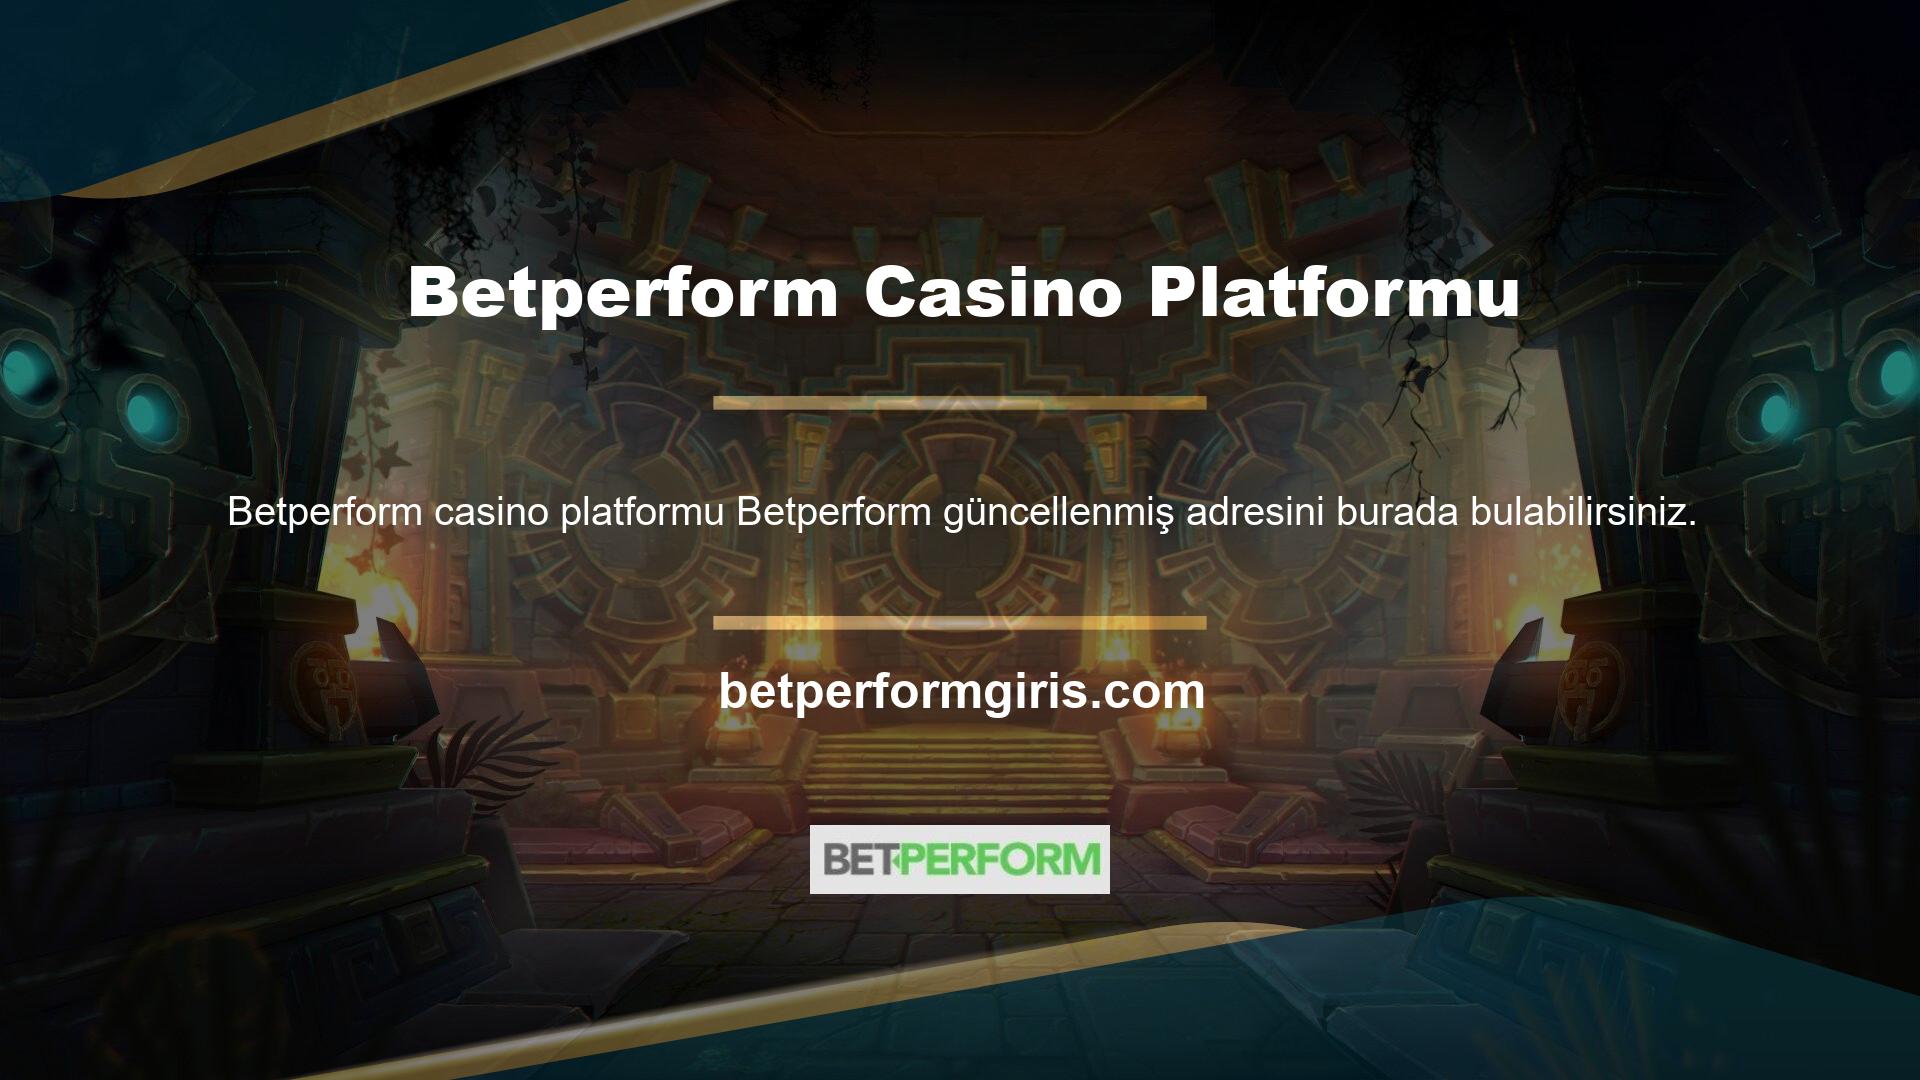 Kısa varlığına rağmen Betperform hızlı bir büyüme yaşadı ve şu anda en hızlı büyüyen casino platformlarından biri